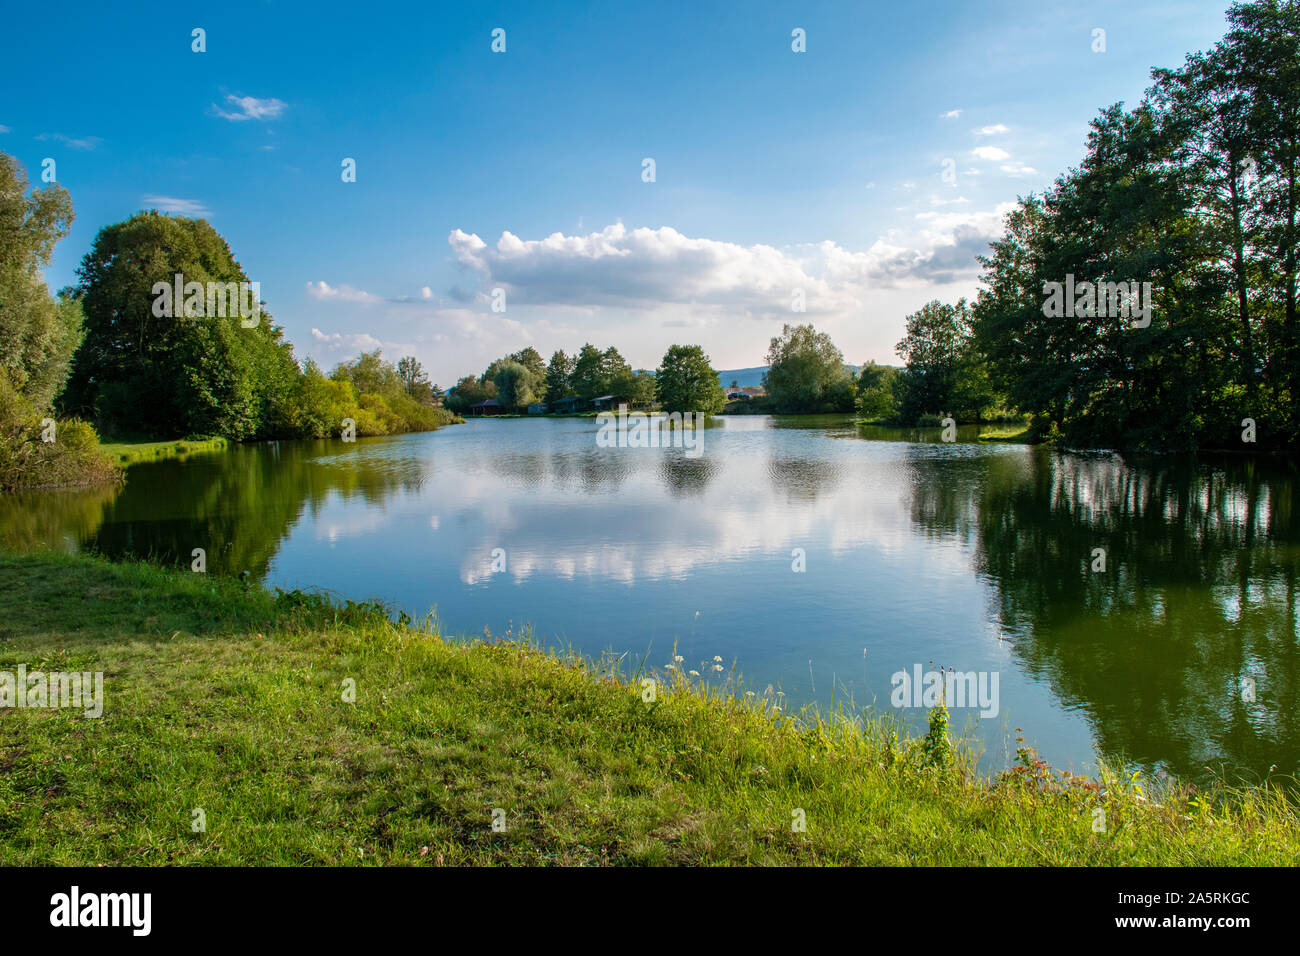 Fischteich in der Nähe von Diviaky, Slowakei in sonniger Tag. Sommer am See. Slowakische Natur. Landschaft Bild des stehenden Wassers mit Bäumen und Wolken Spiegelung Stockfoto